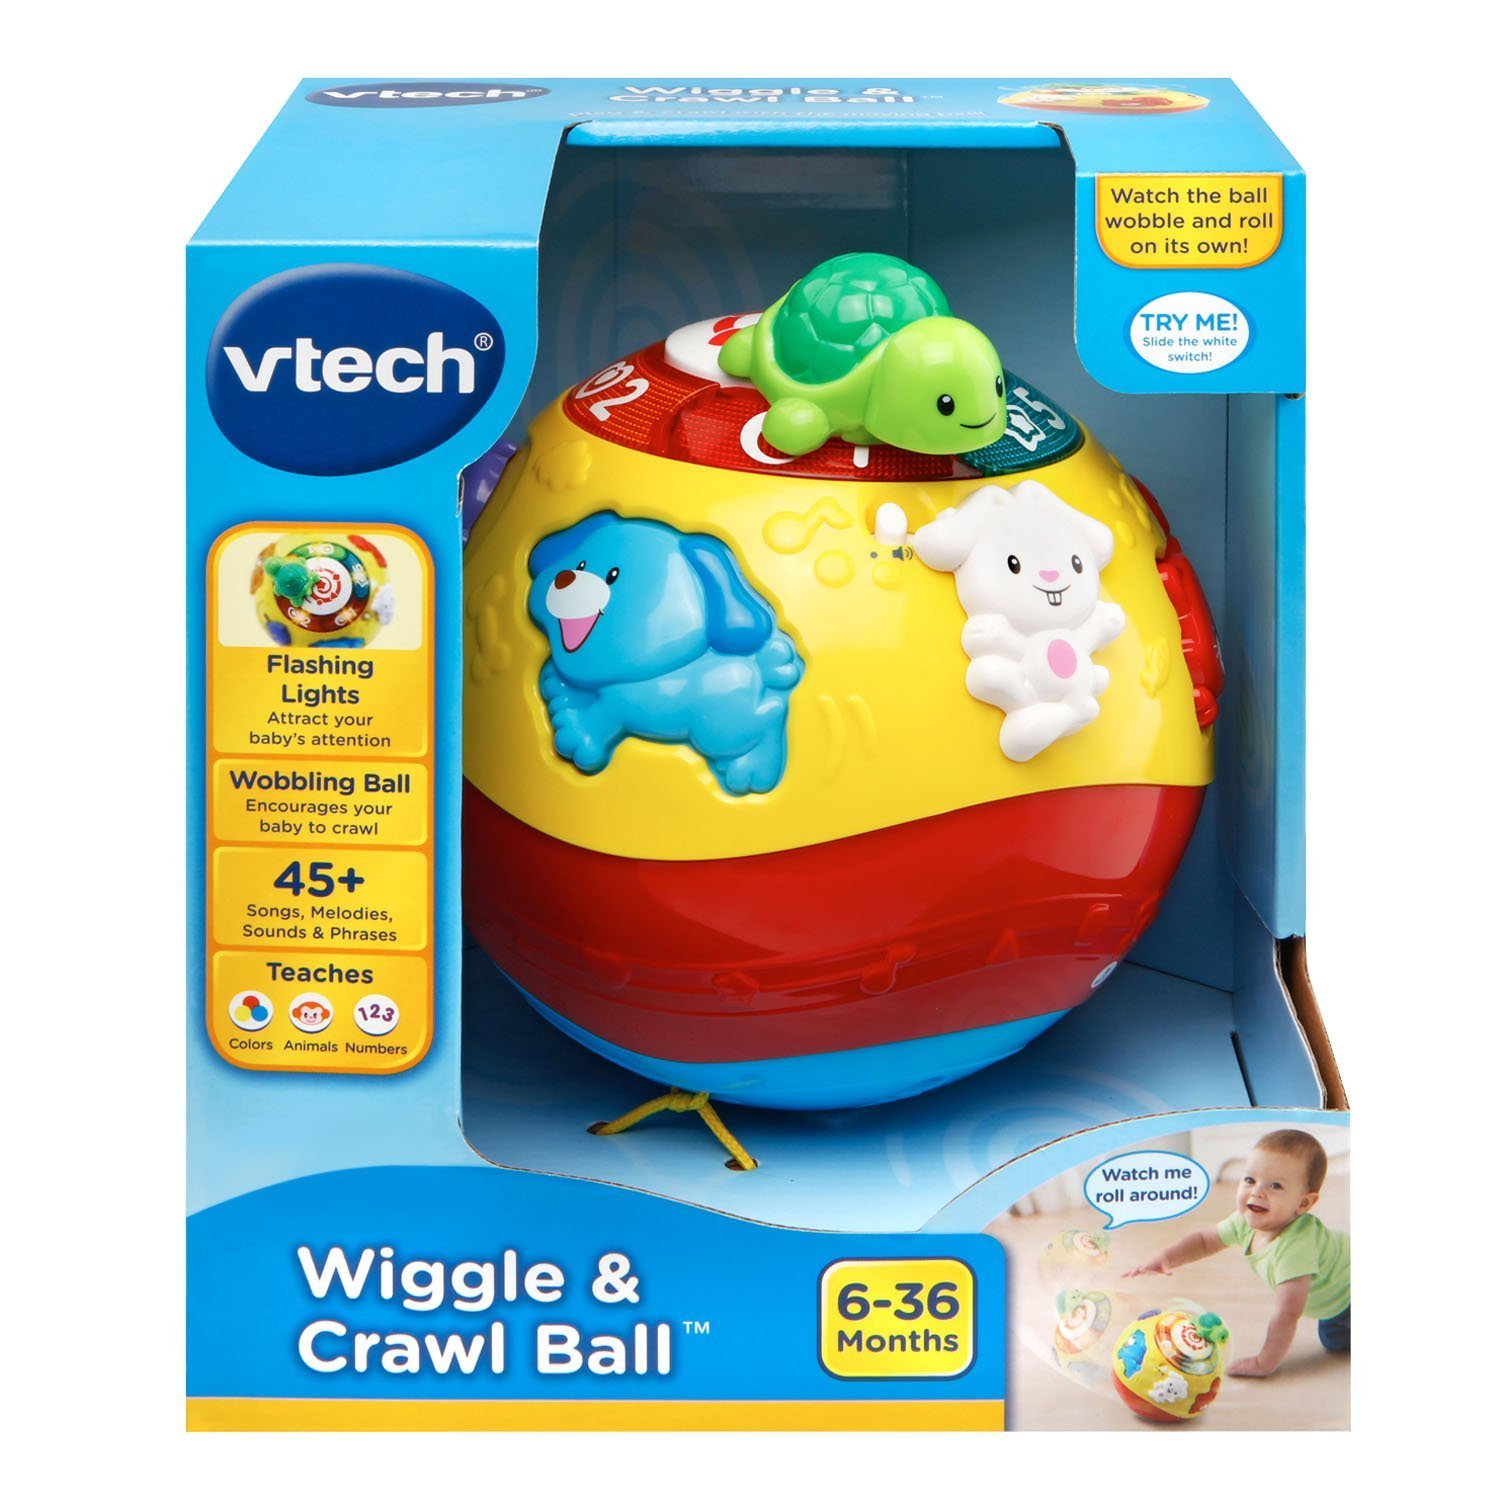 Quả bóng tập bò thông minh VTech Wiggle & Crawl Ball cho bé